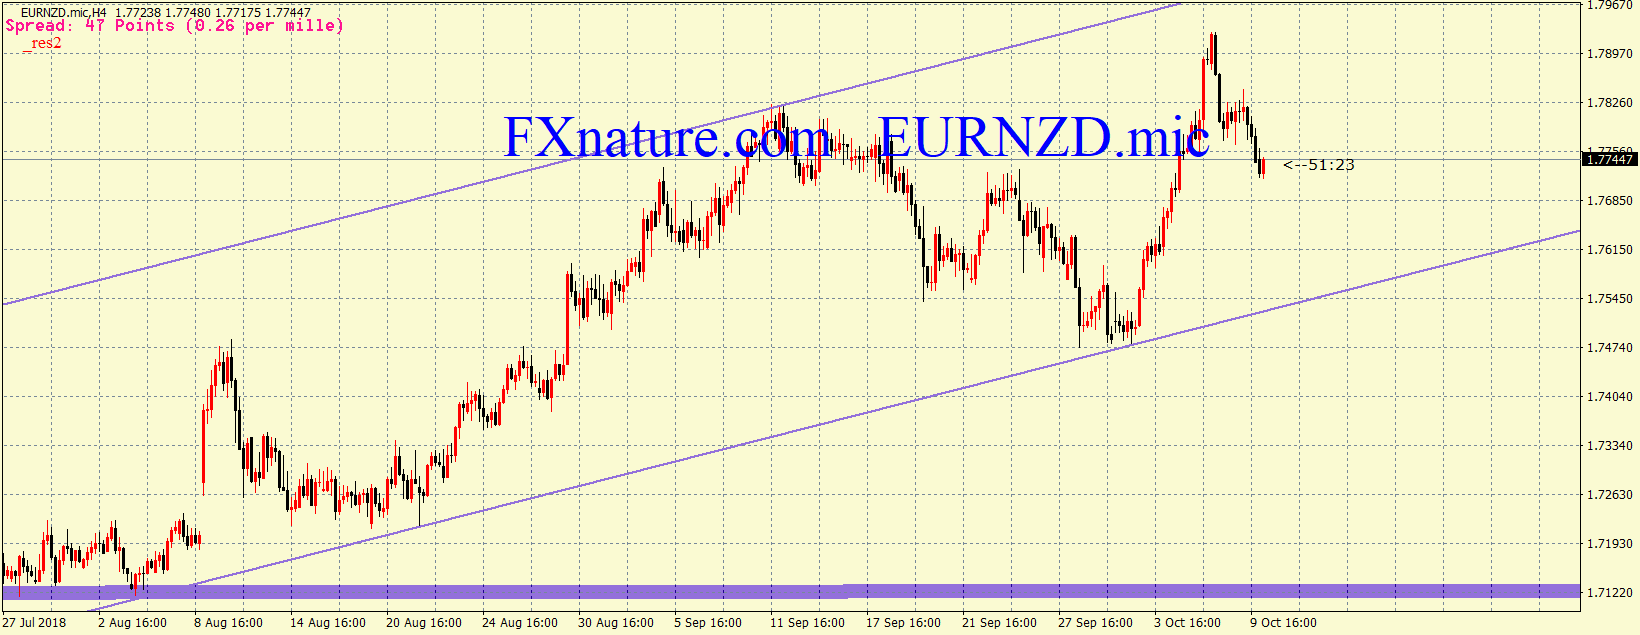  یورو دلار نیوزلند